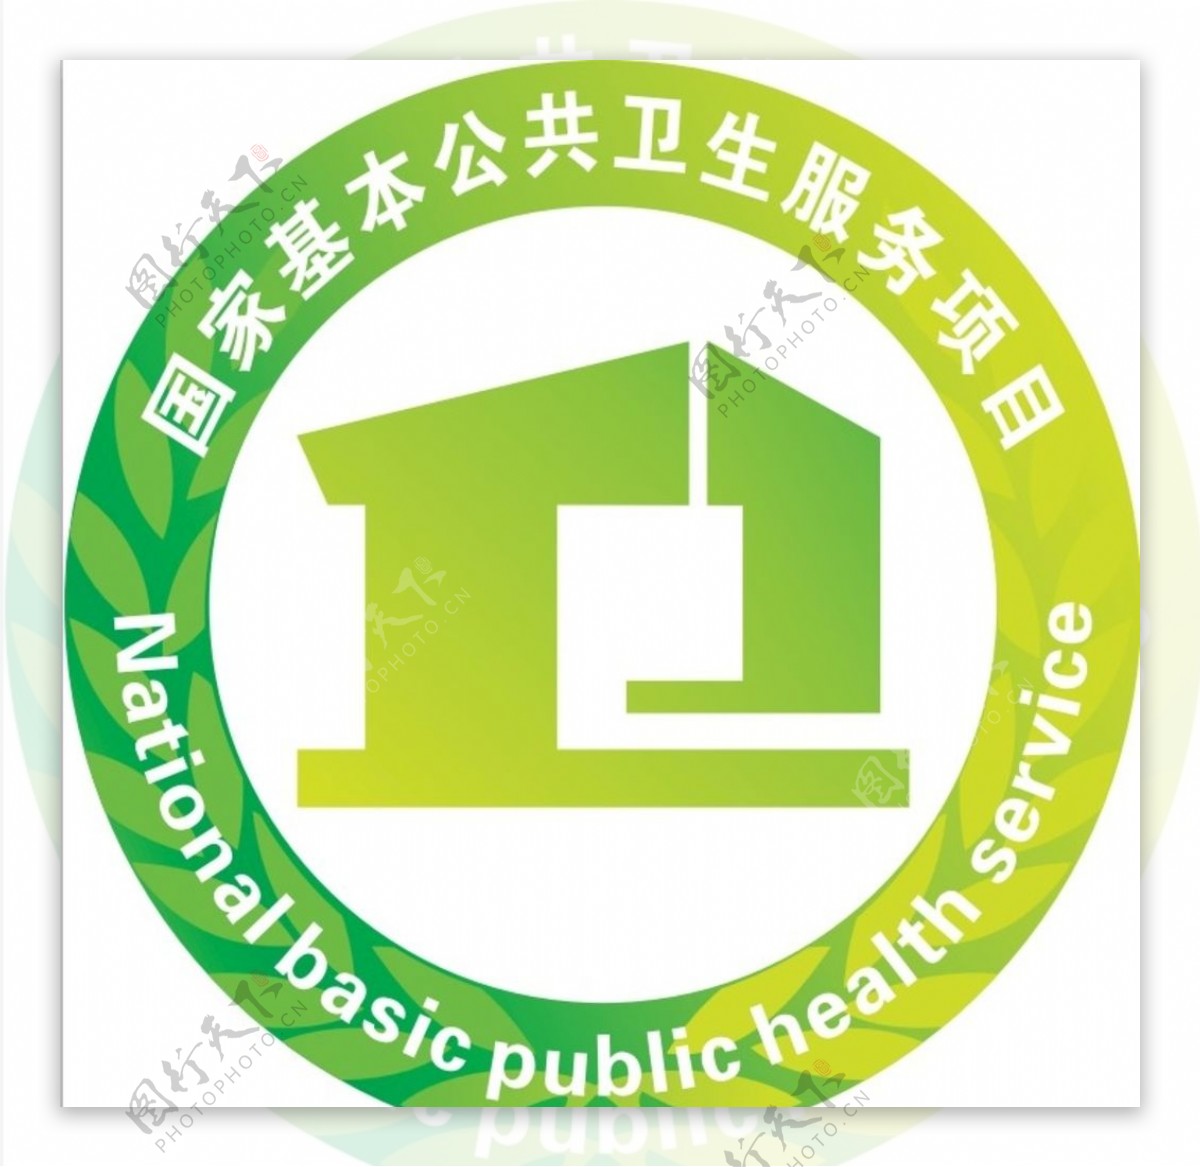 国家基本公共卫生服务项目